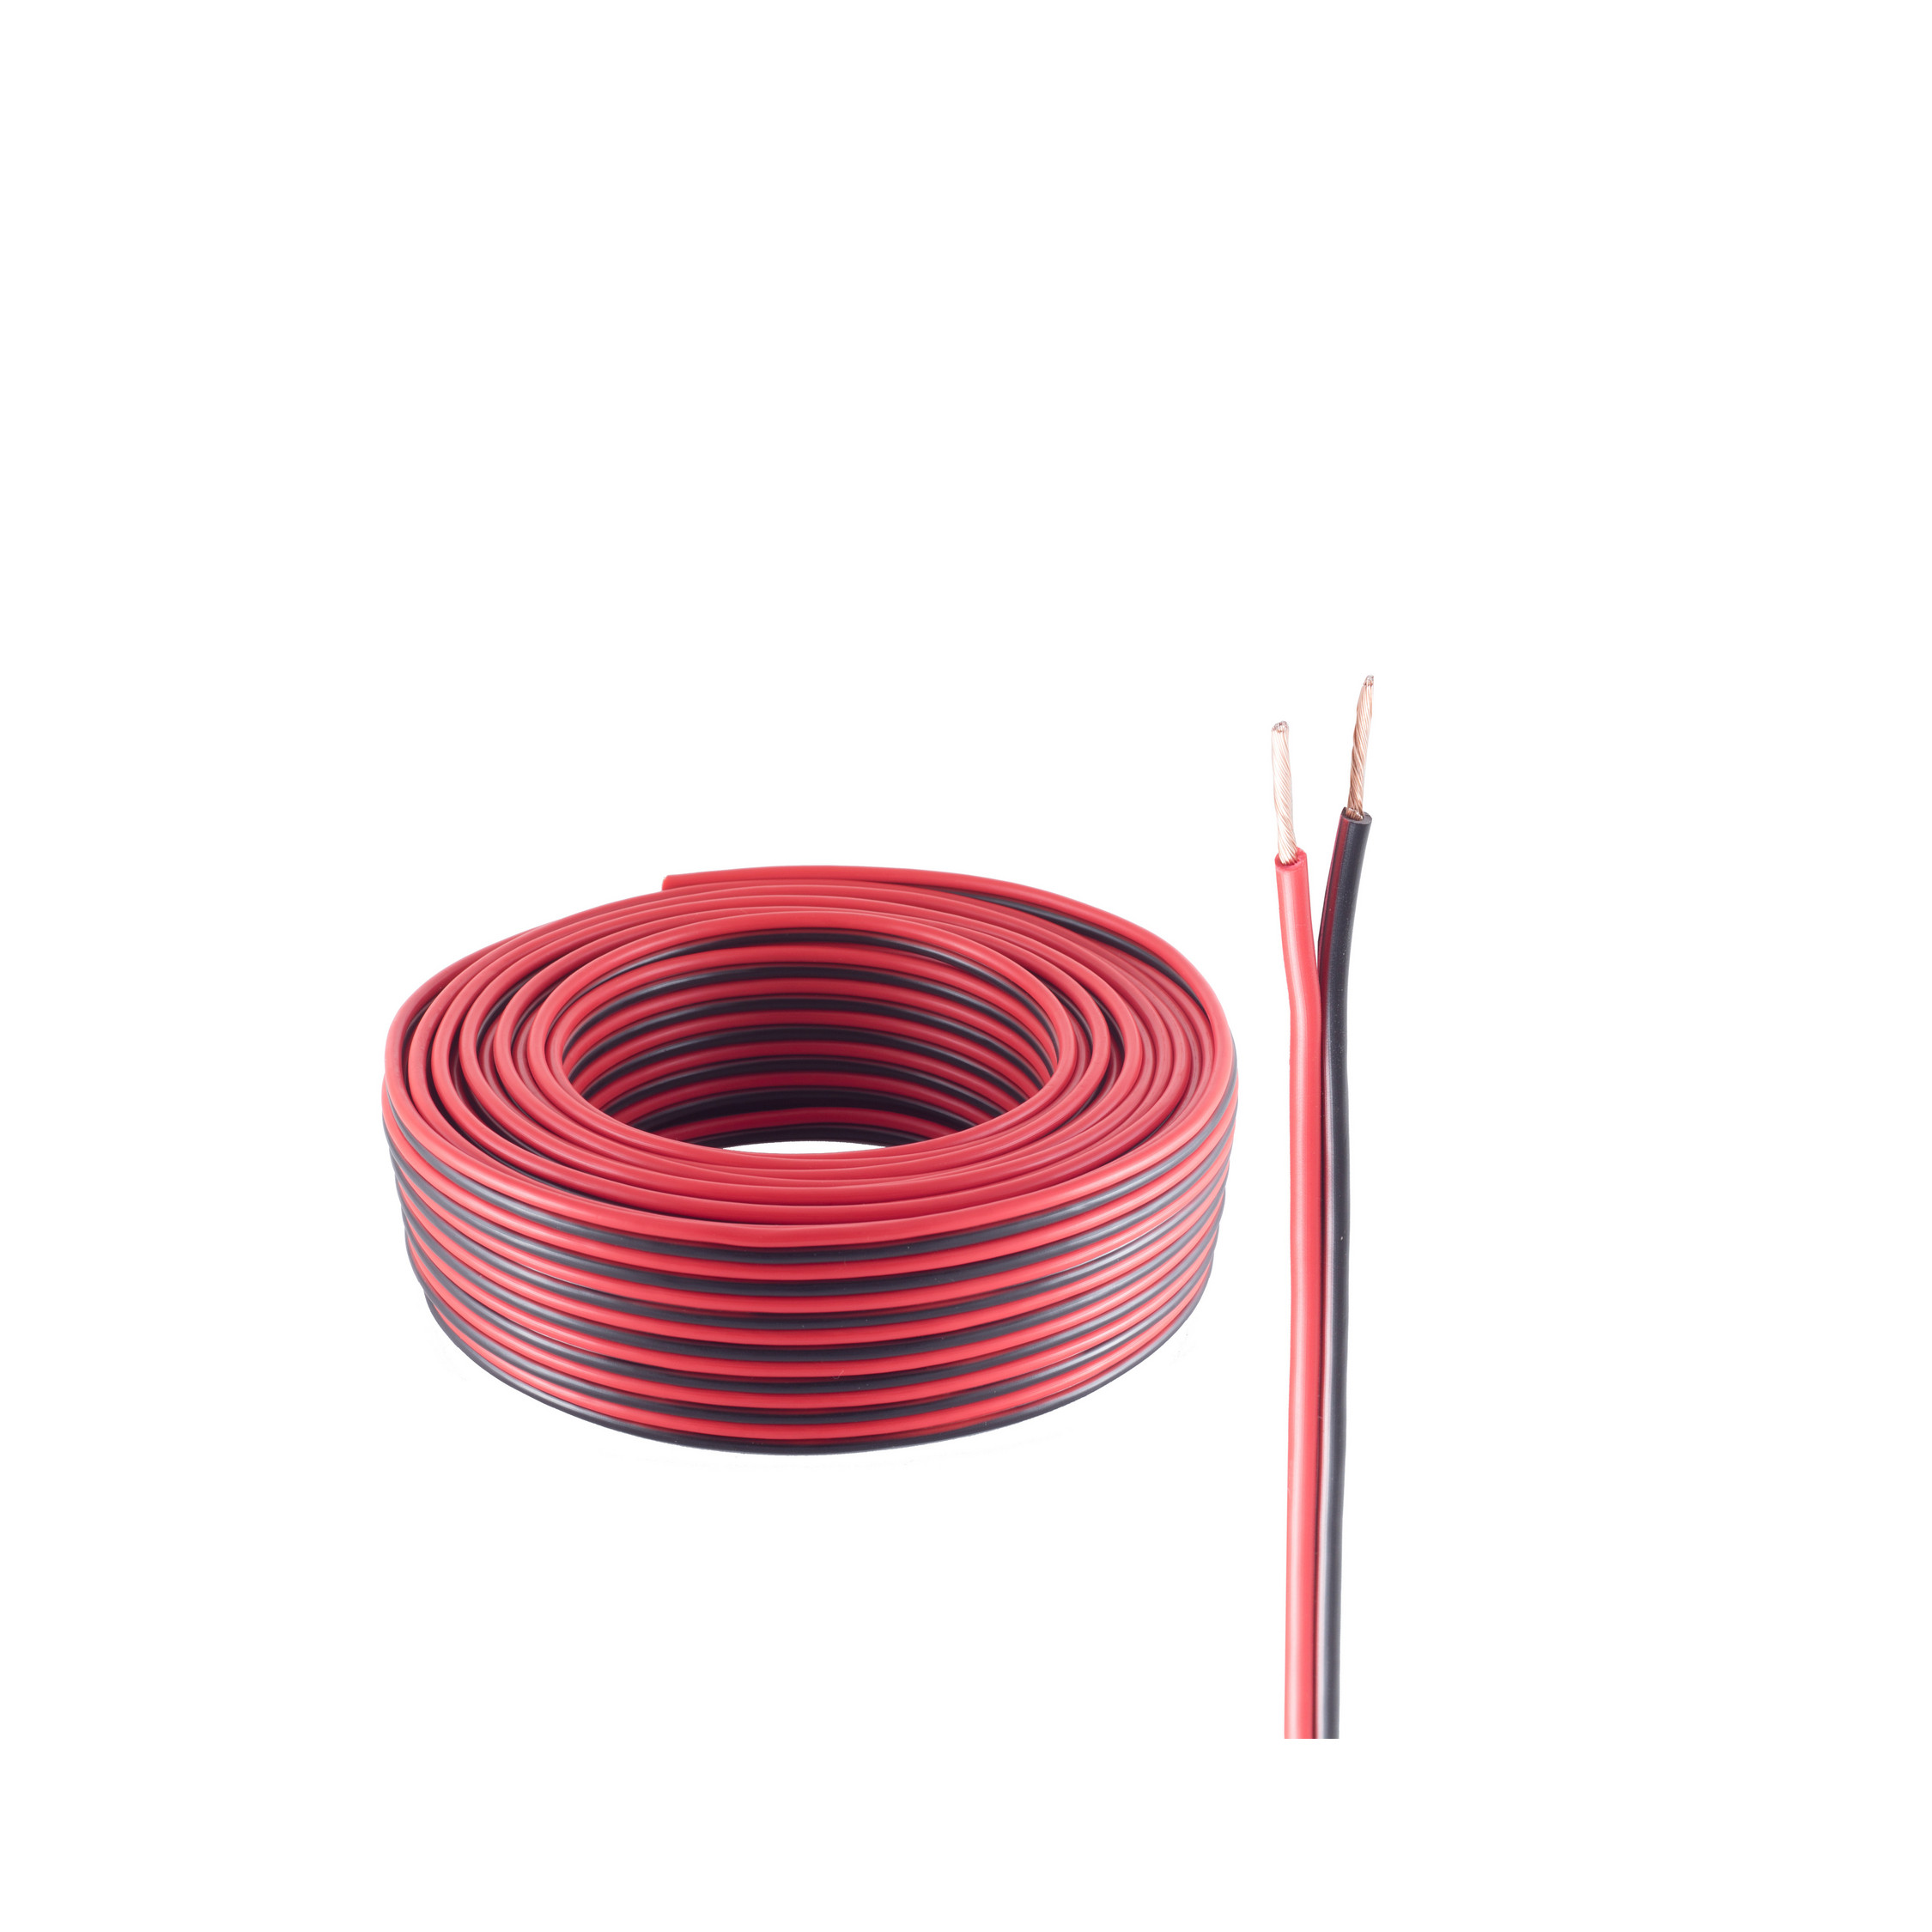 LS-Kabel Lautsprecher 1,5mm² 25m, CCA SHIVERPEAKS m Kabel, rot/schwarz 48x0,20 25